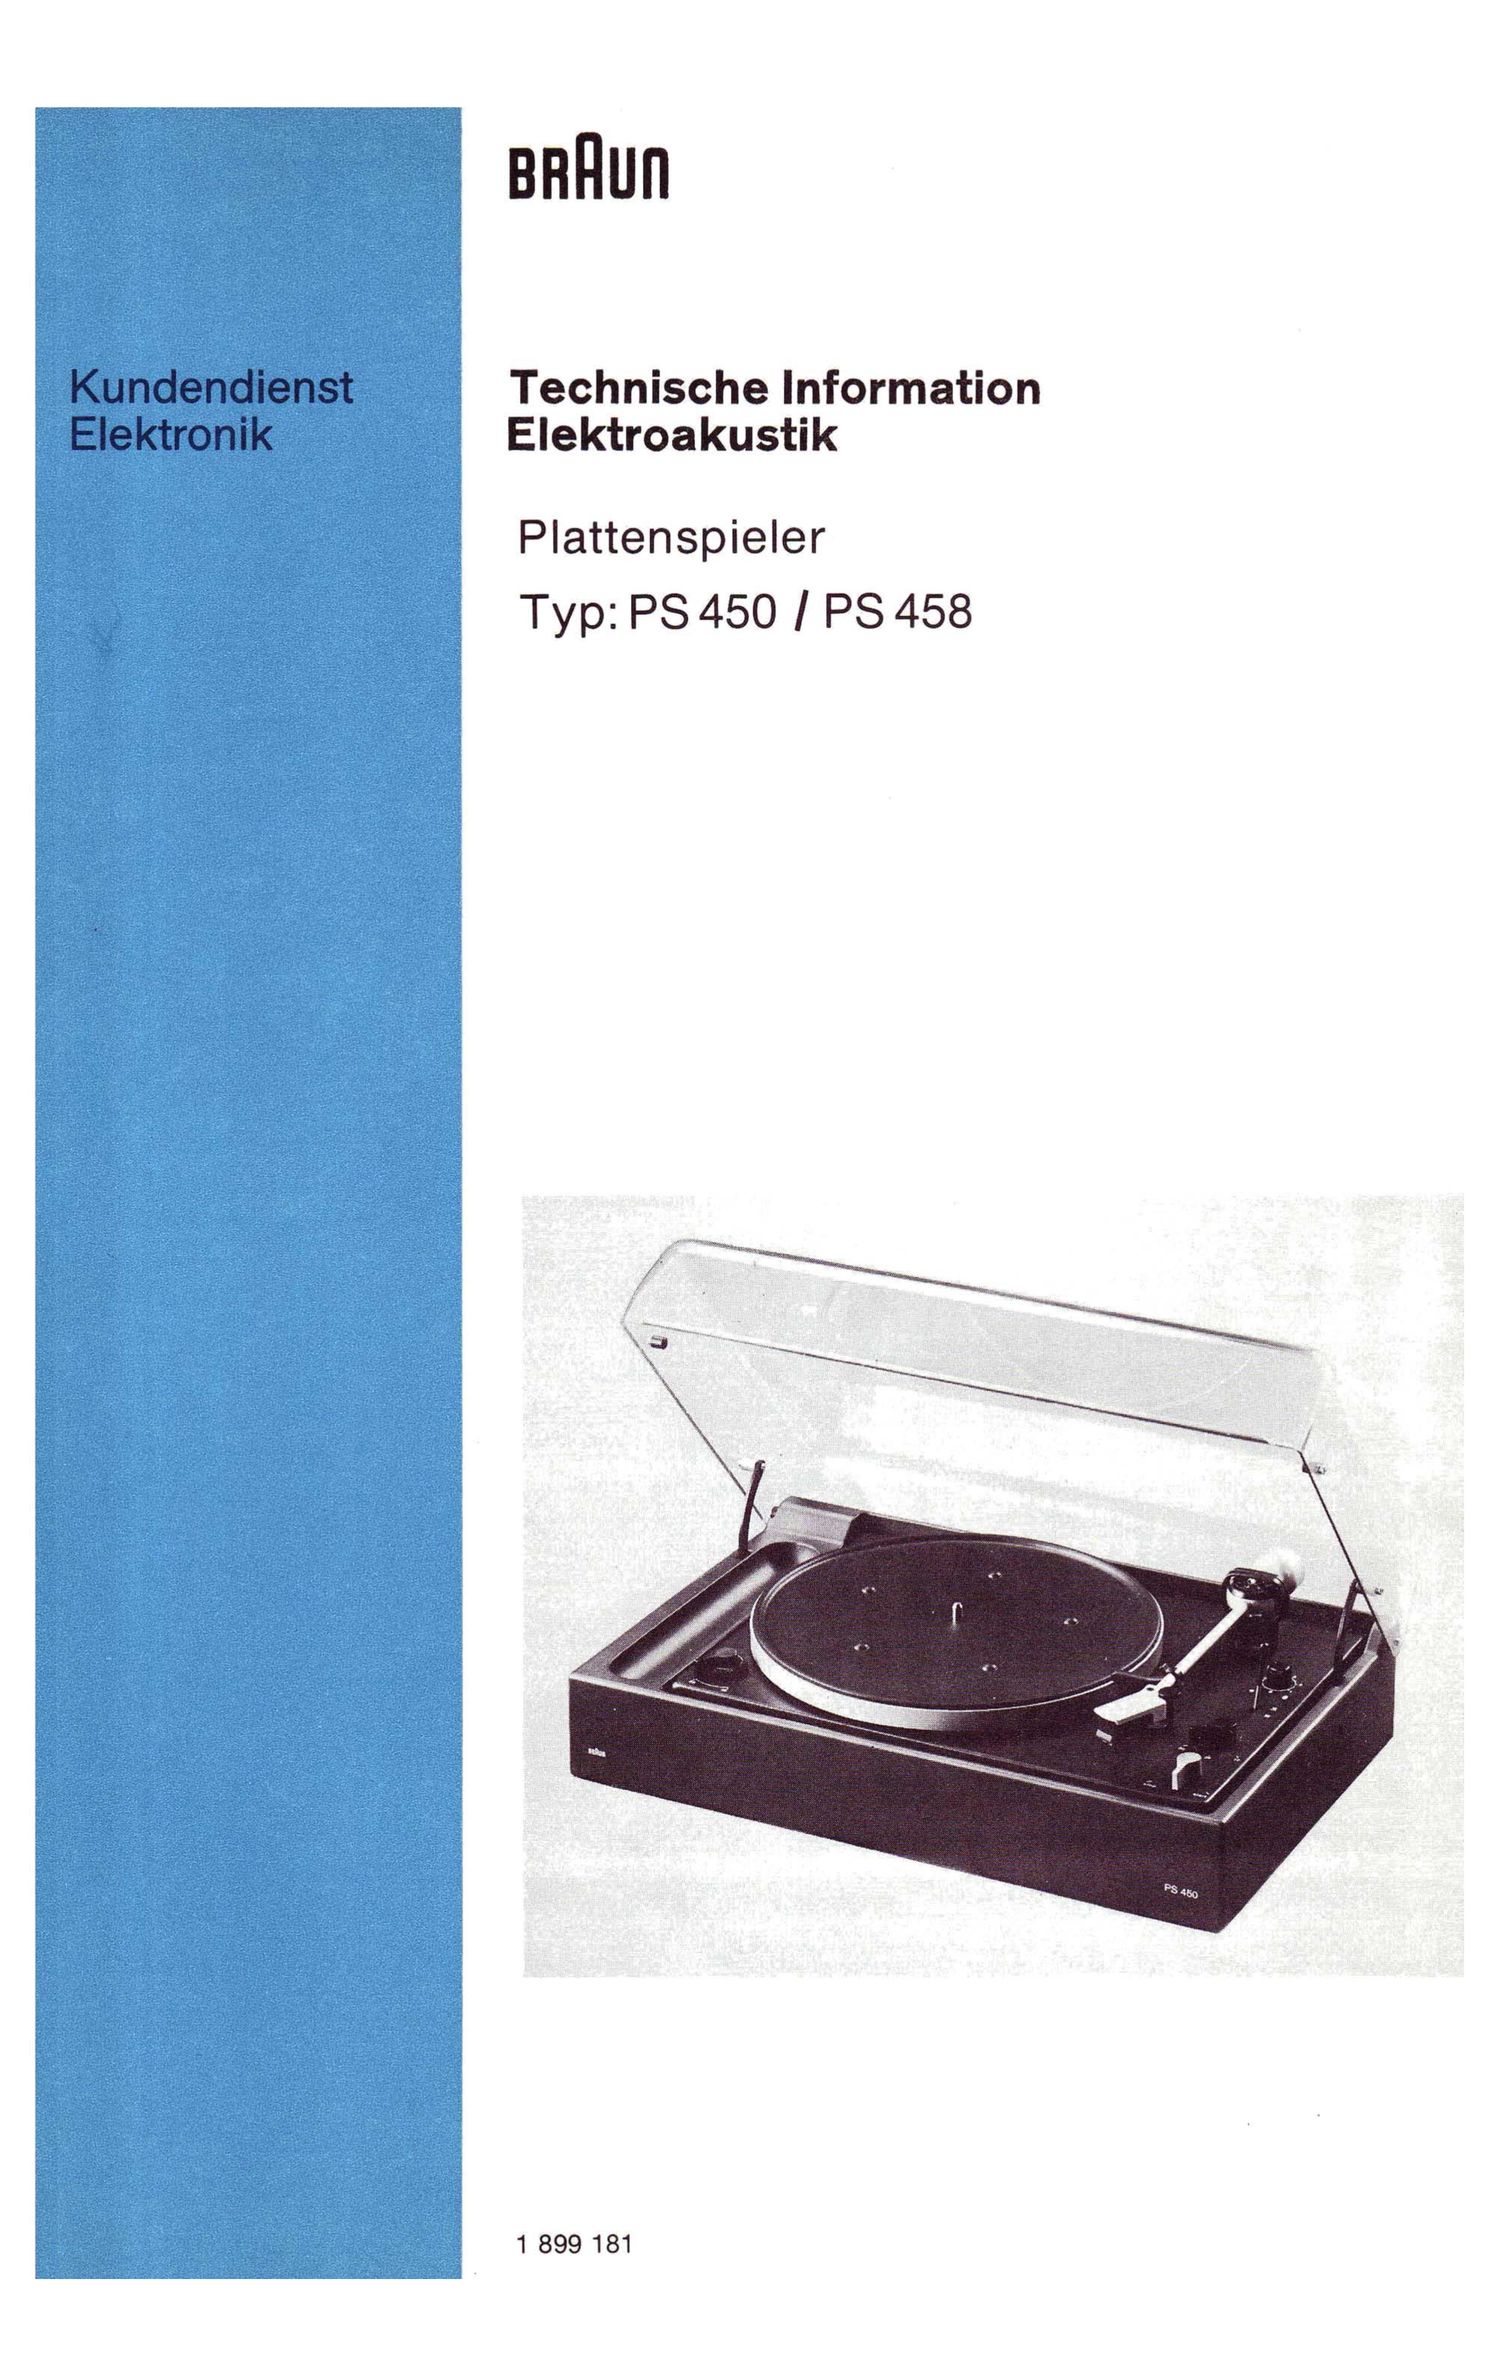 Braun PS 450 PS 458 Service Manual